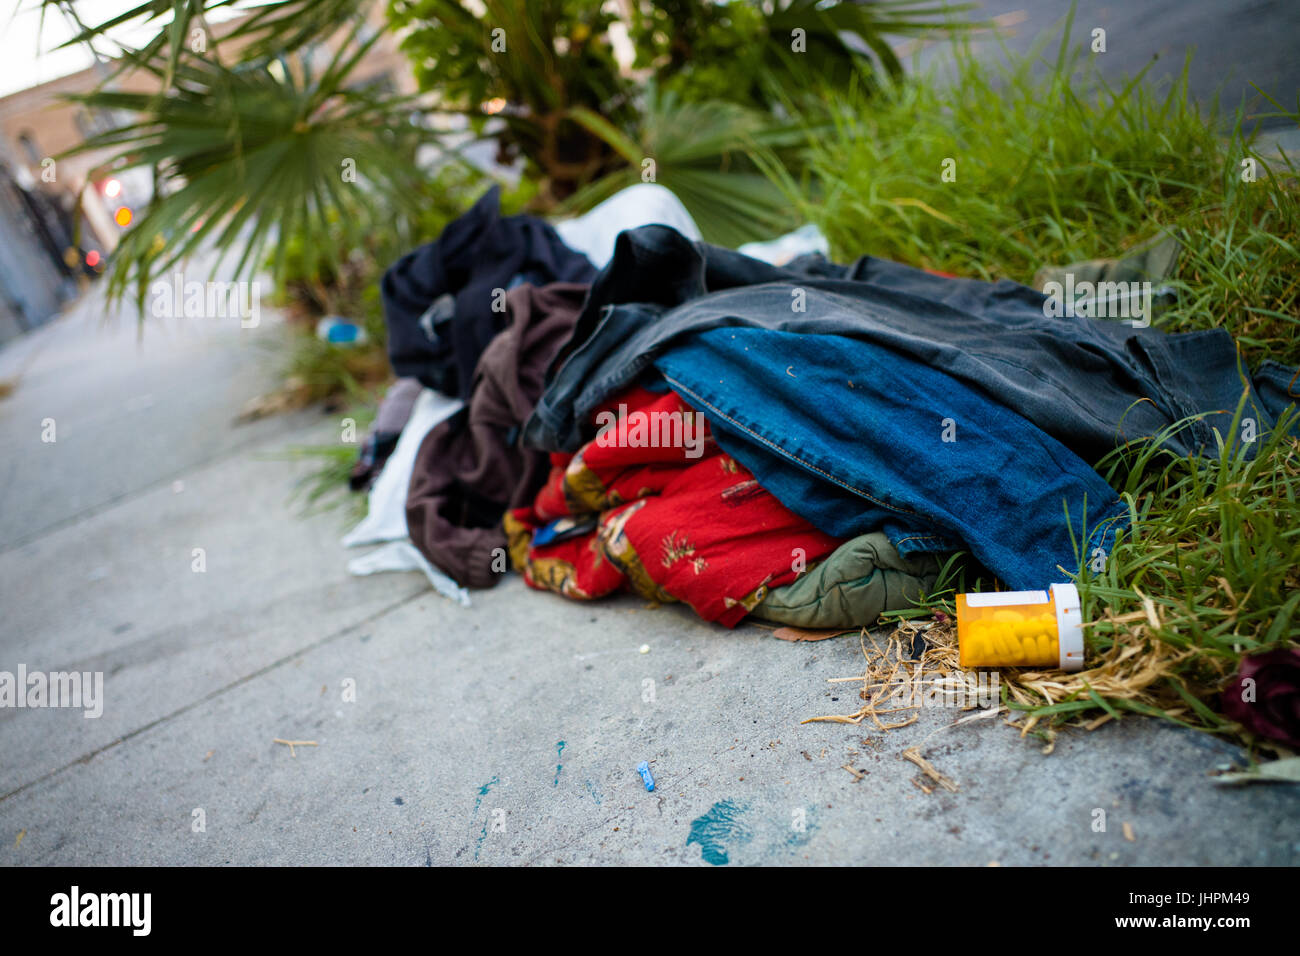 Pharmazeutischen Pillen und verstreuten Kleider lagen verlassenen auf einem Stadt-Bürgersteig in Hollywood, Los Angeles, Kalifornien. Stockfoto